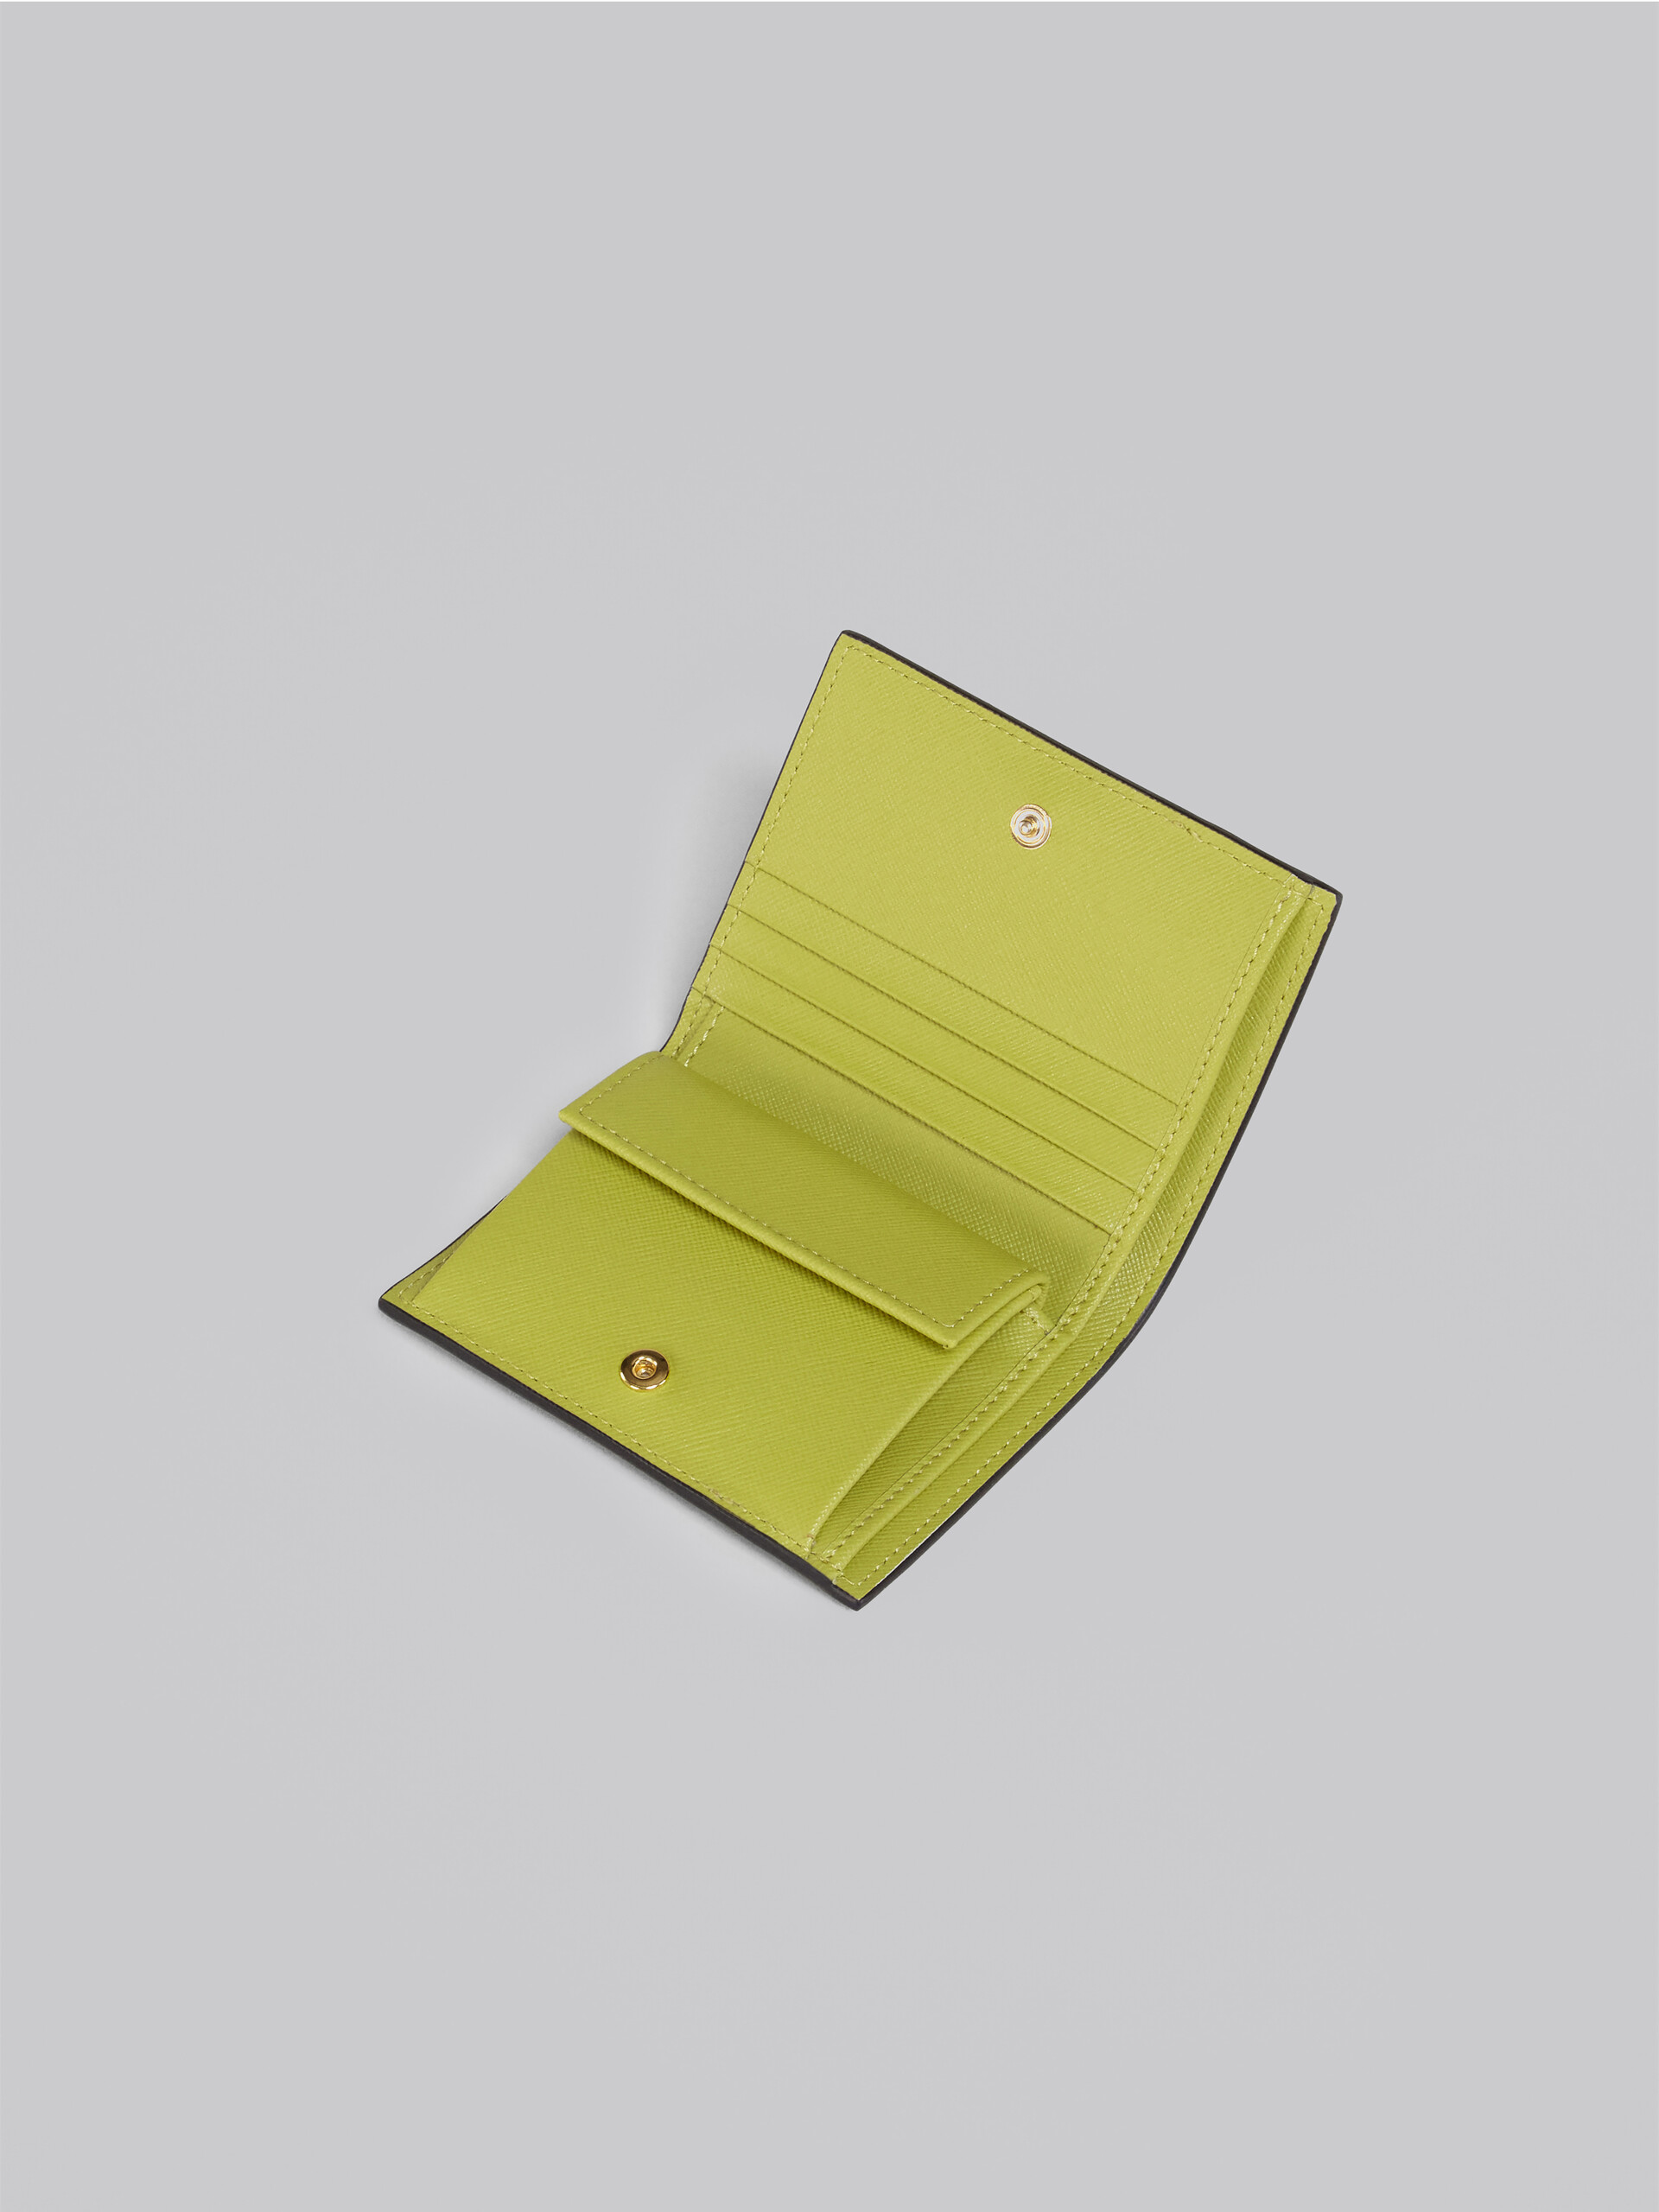 Portafoglio bi-fold in saffiano verde e bianco - Portafogli - Image 4